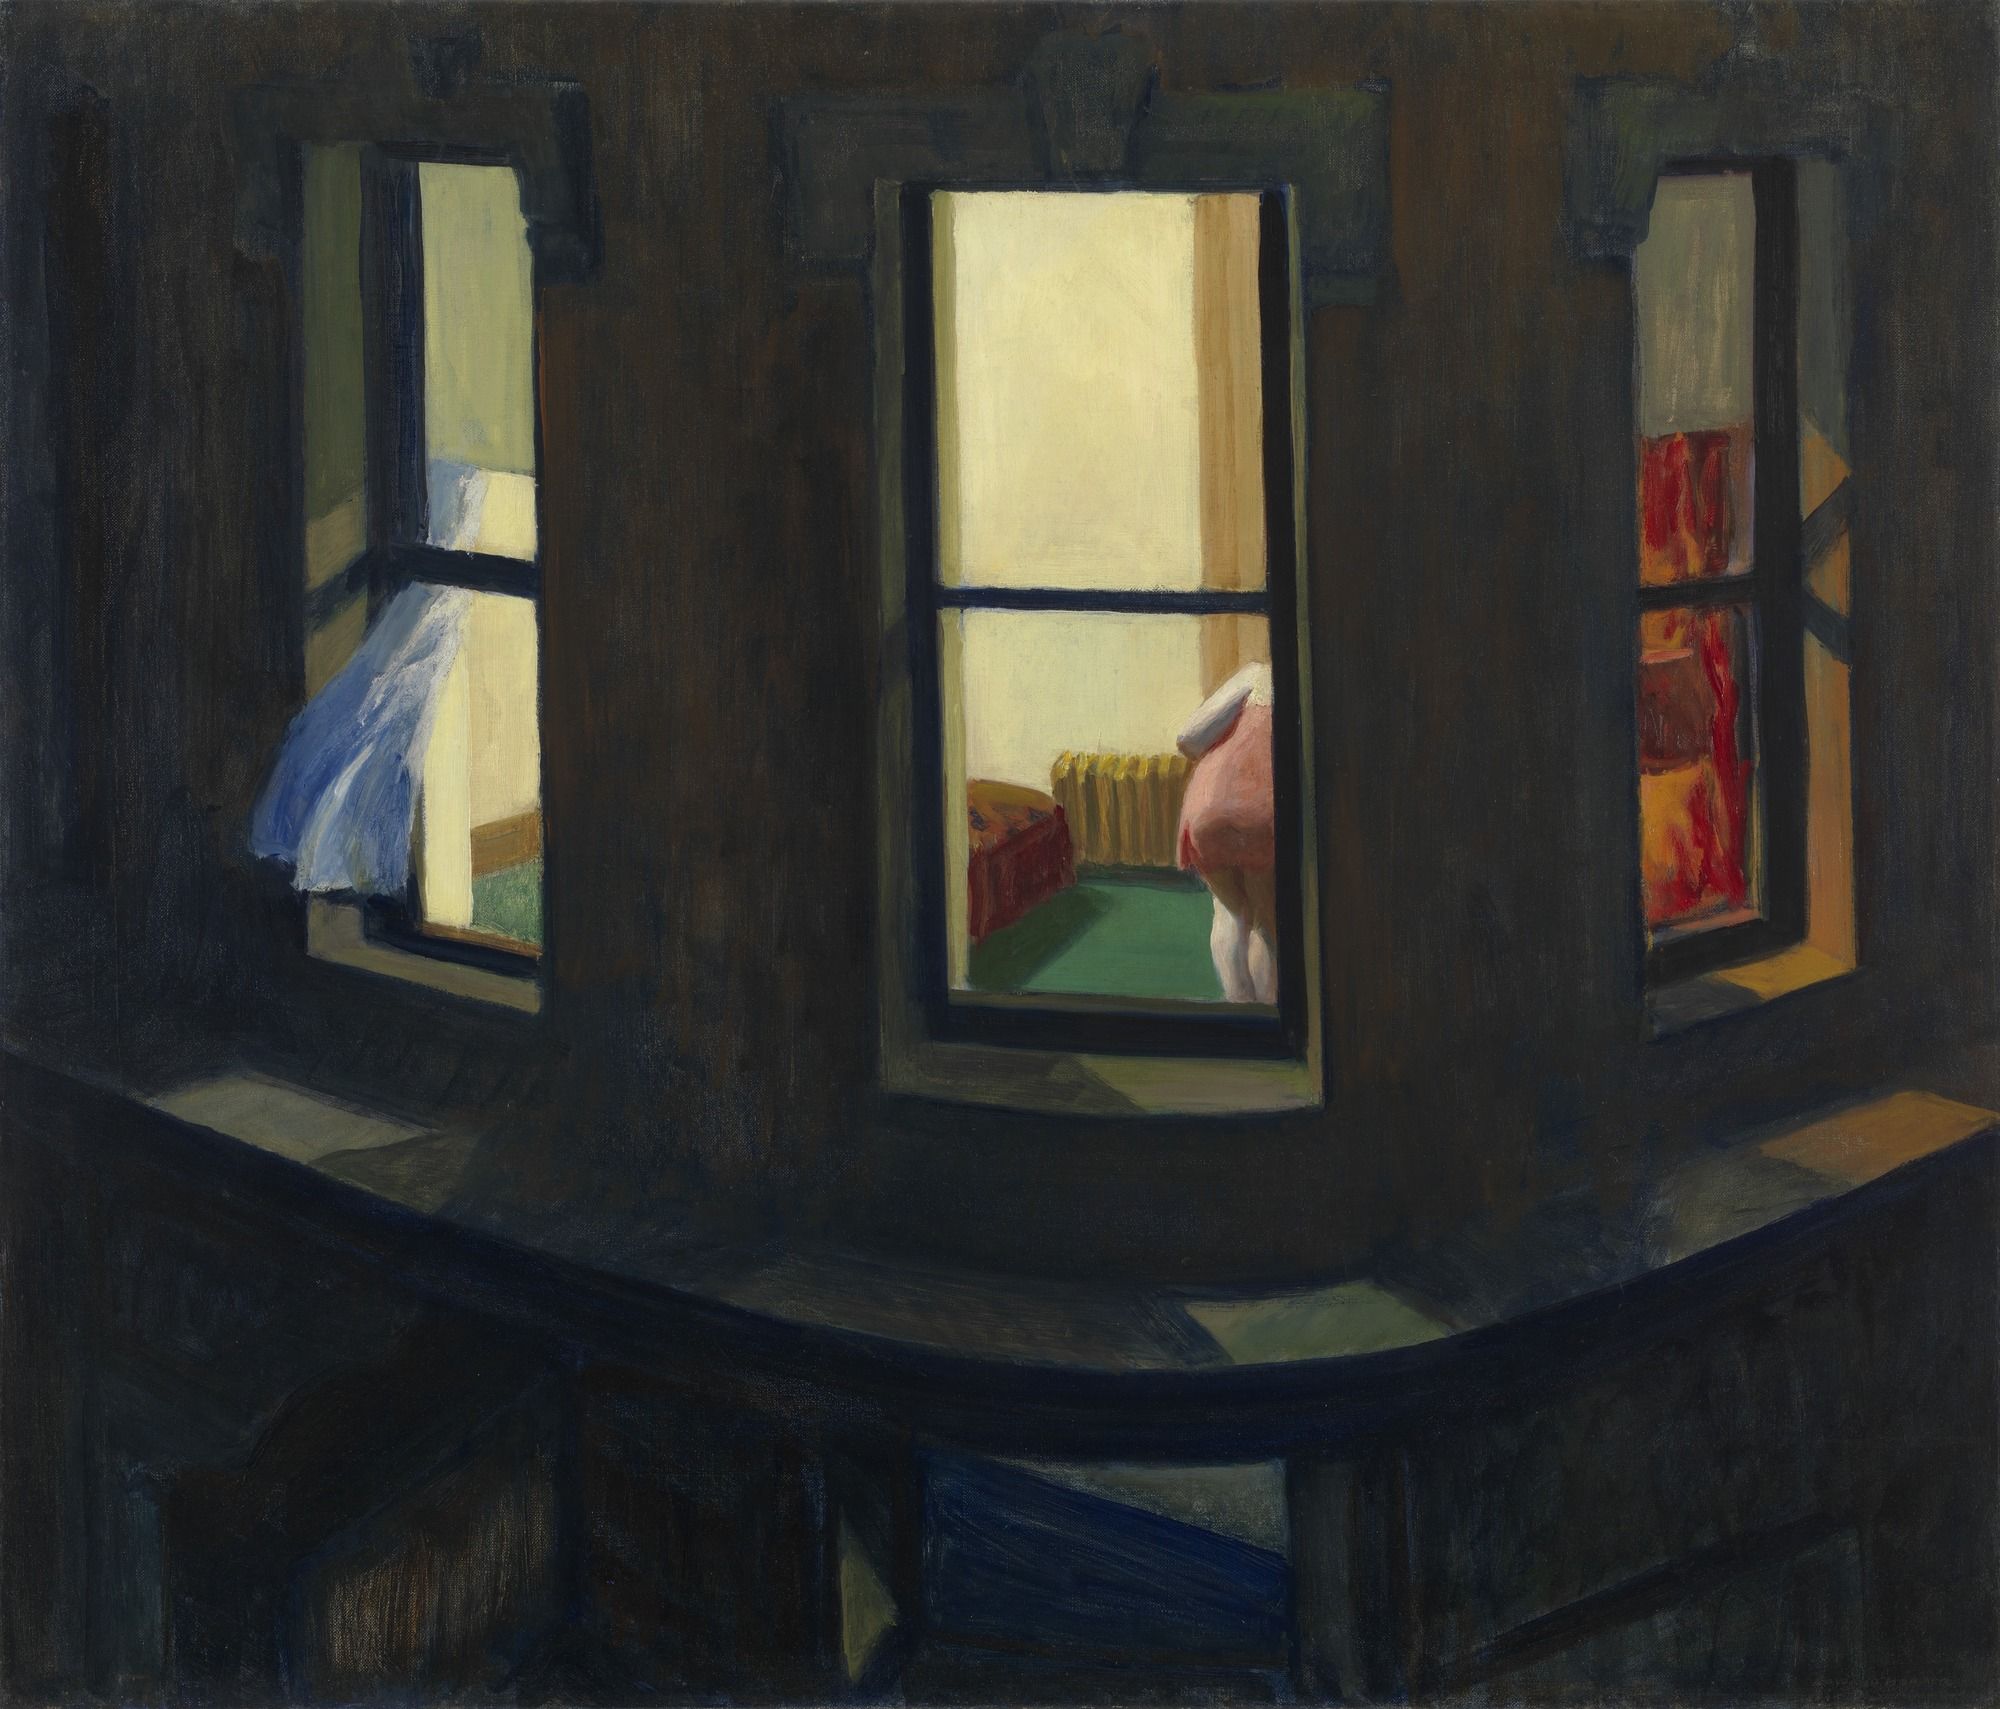 Nachtfenster by Edward Hopper - 1928 - 74 x 86 cm Museum of Modern Art